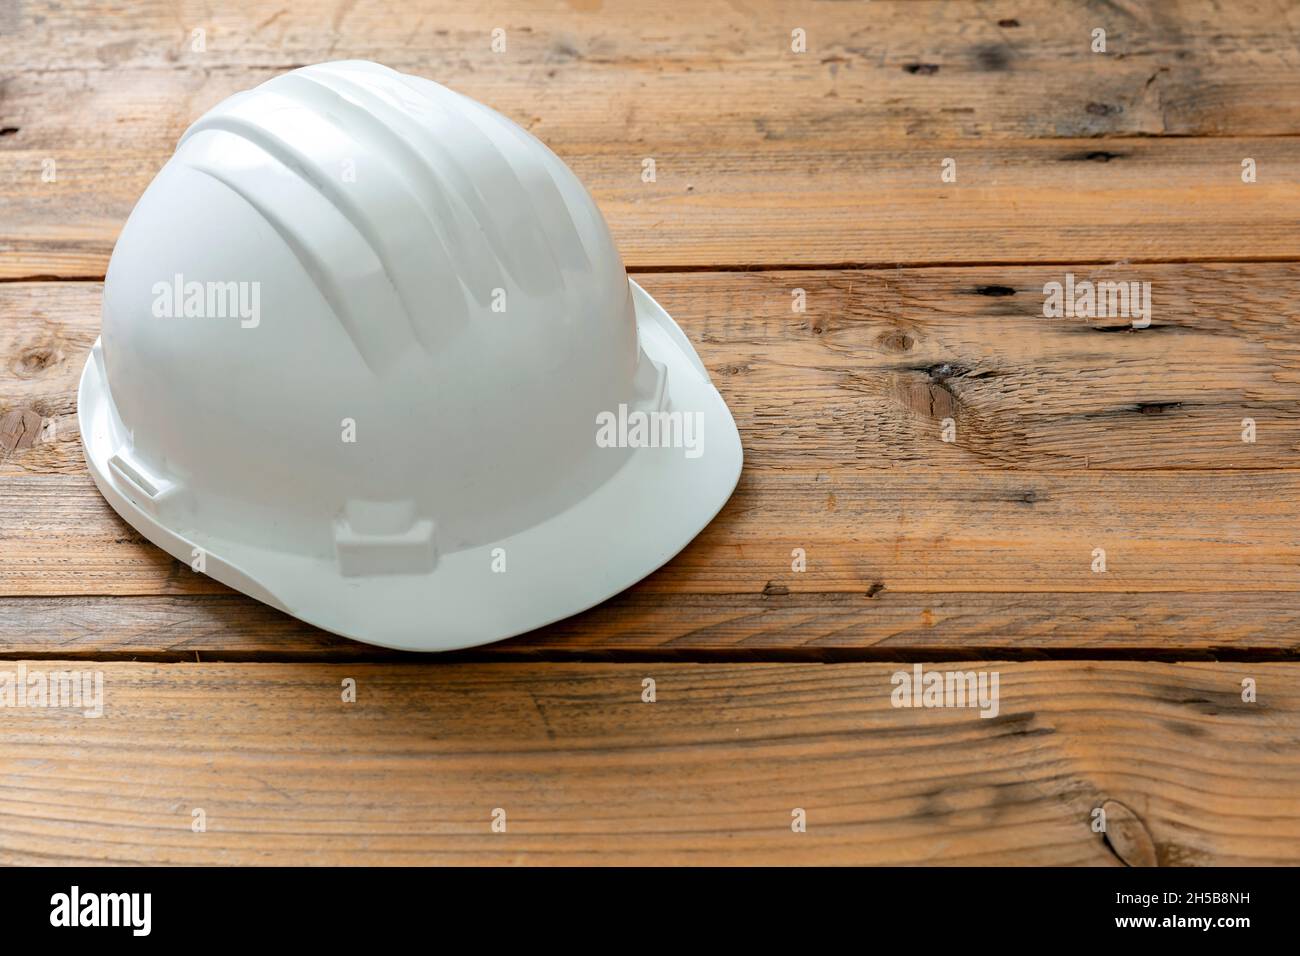 Schutzhelm, weißer Schutzhelm. Baustelleningenieur persönliche Schutzkopfausrüstung, Holzhintergrund Stockfoto